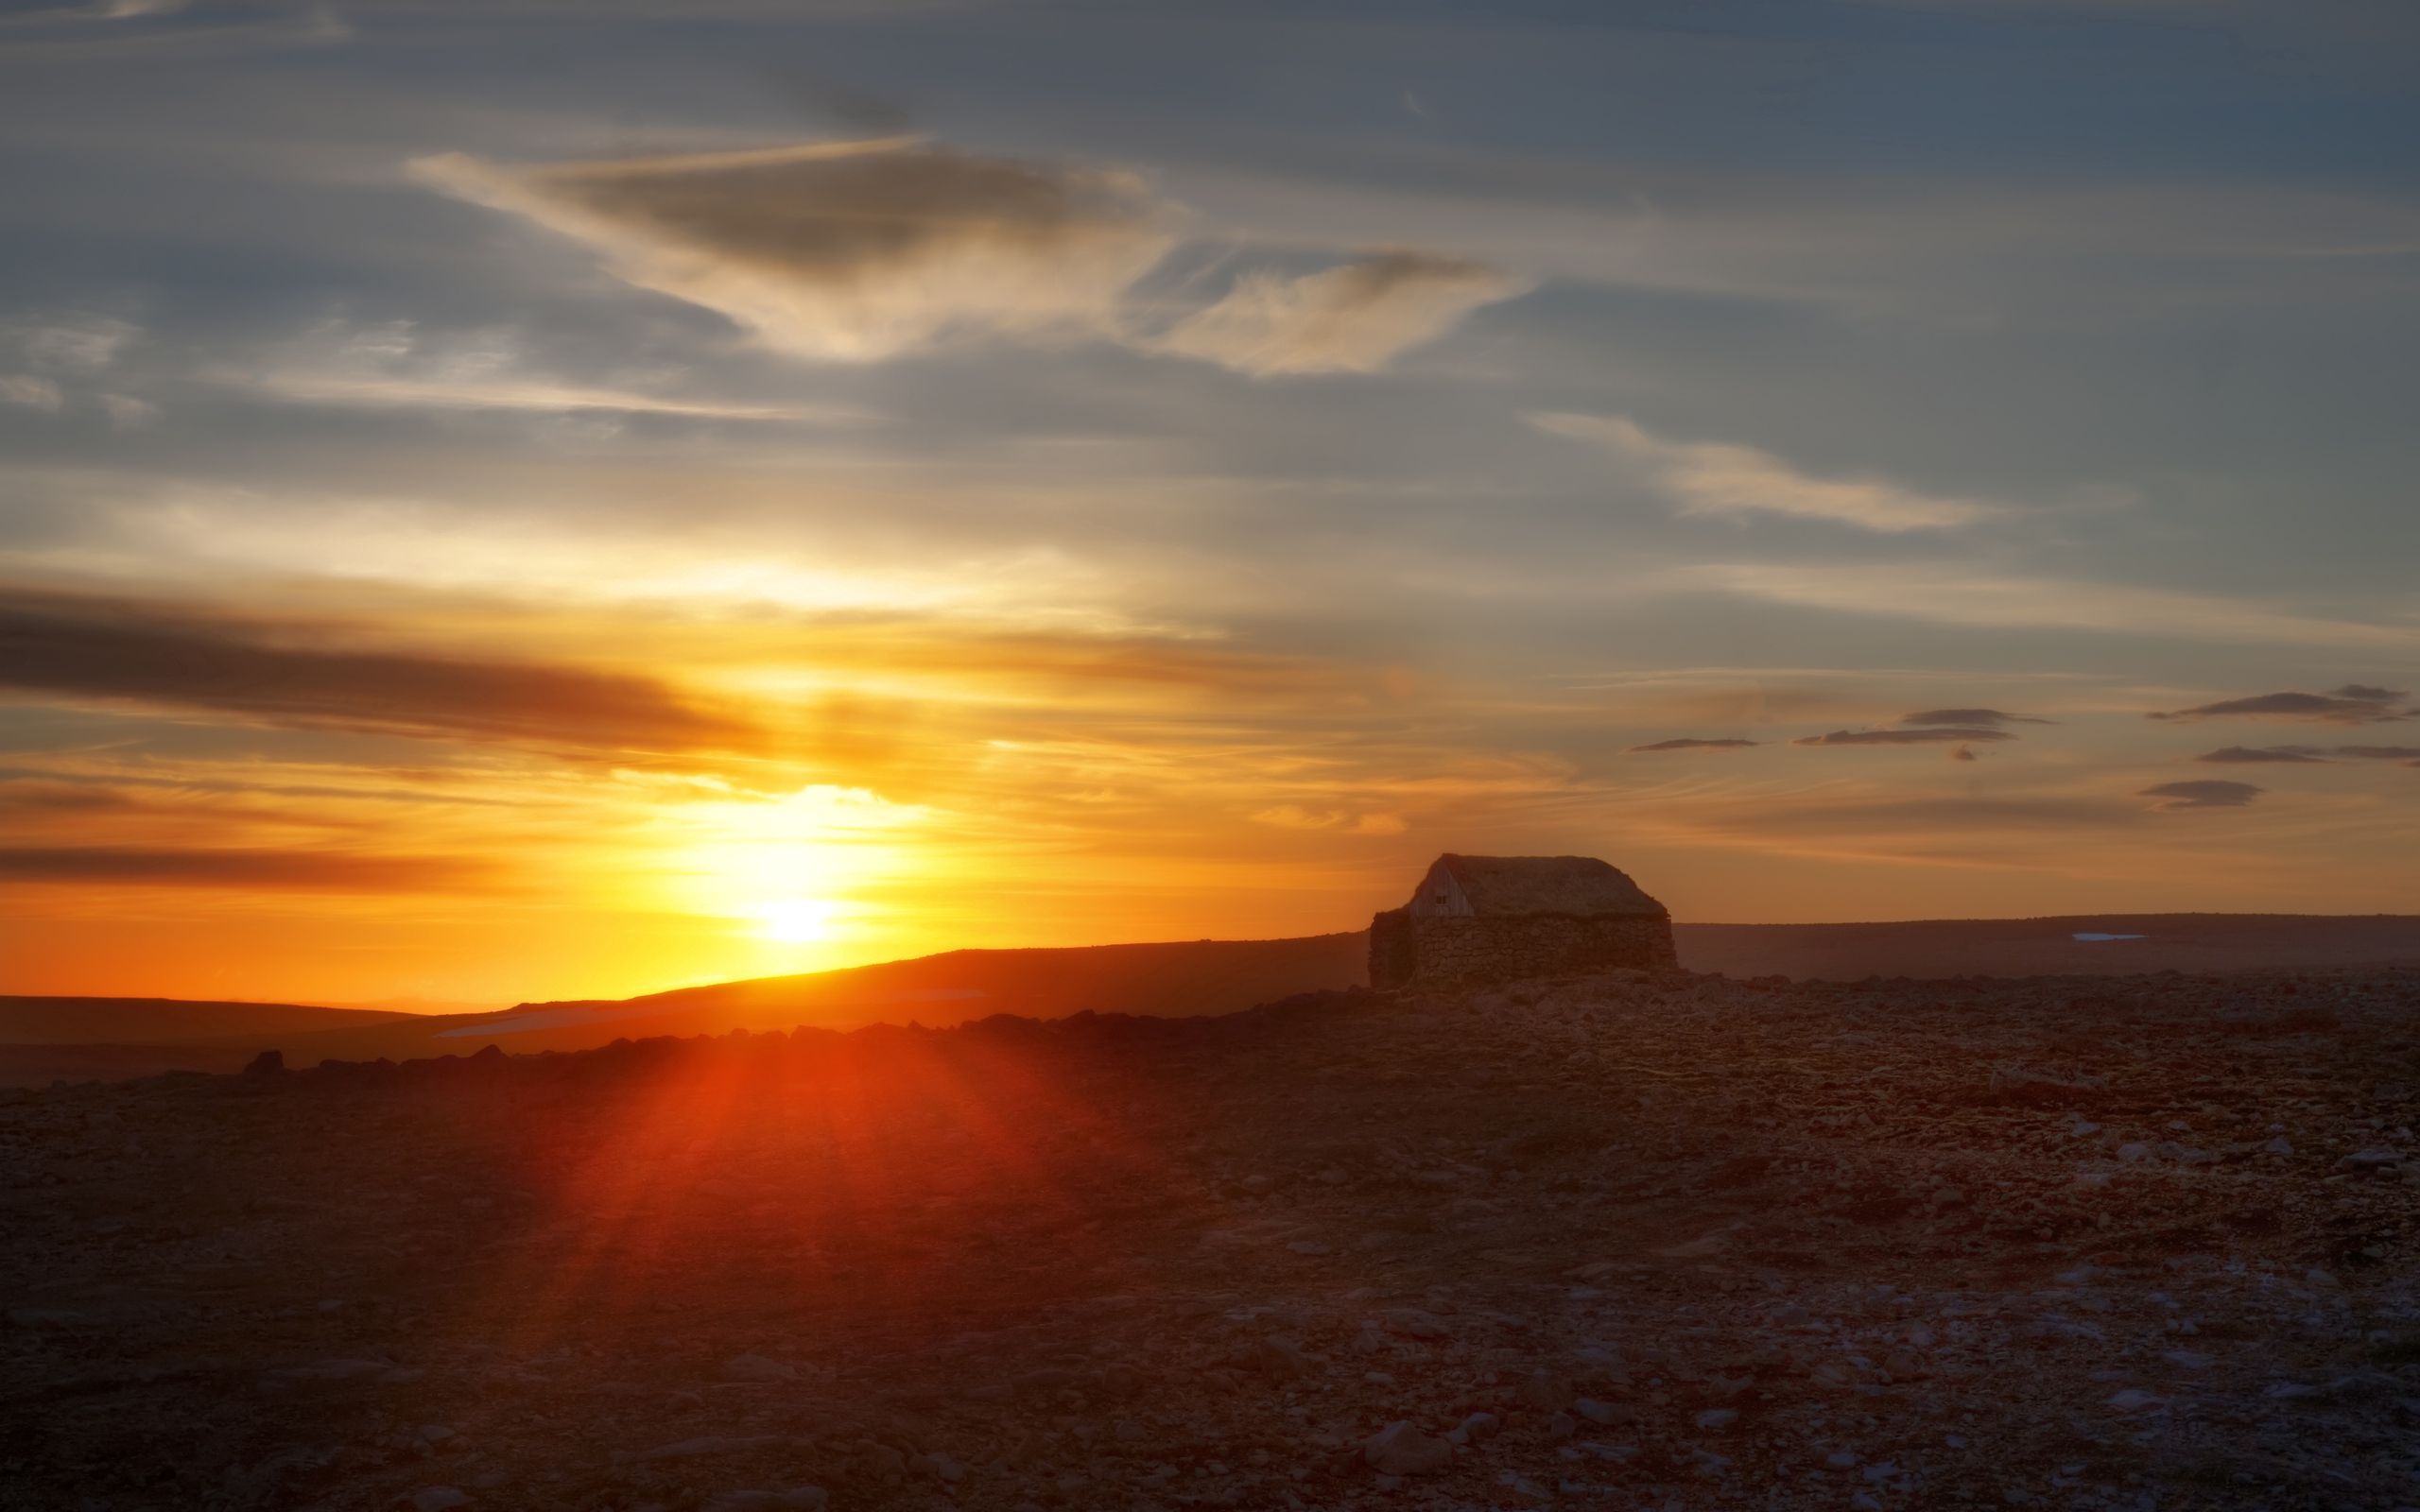 HD for desktop 1080p Structure sunset, sun, desert, nature